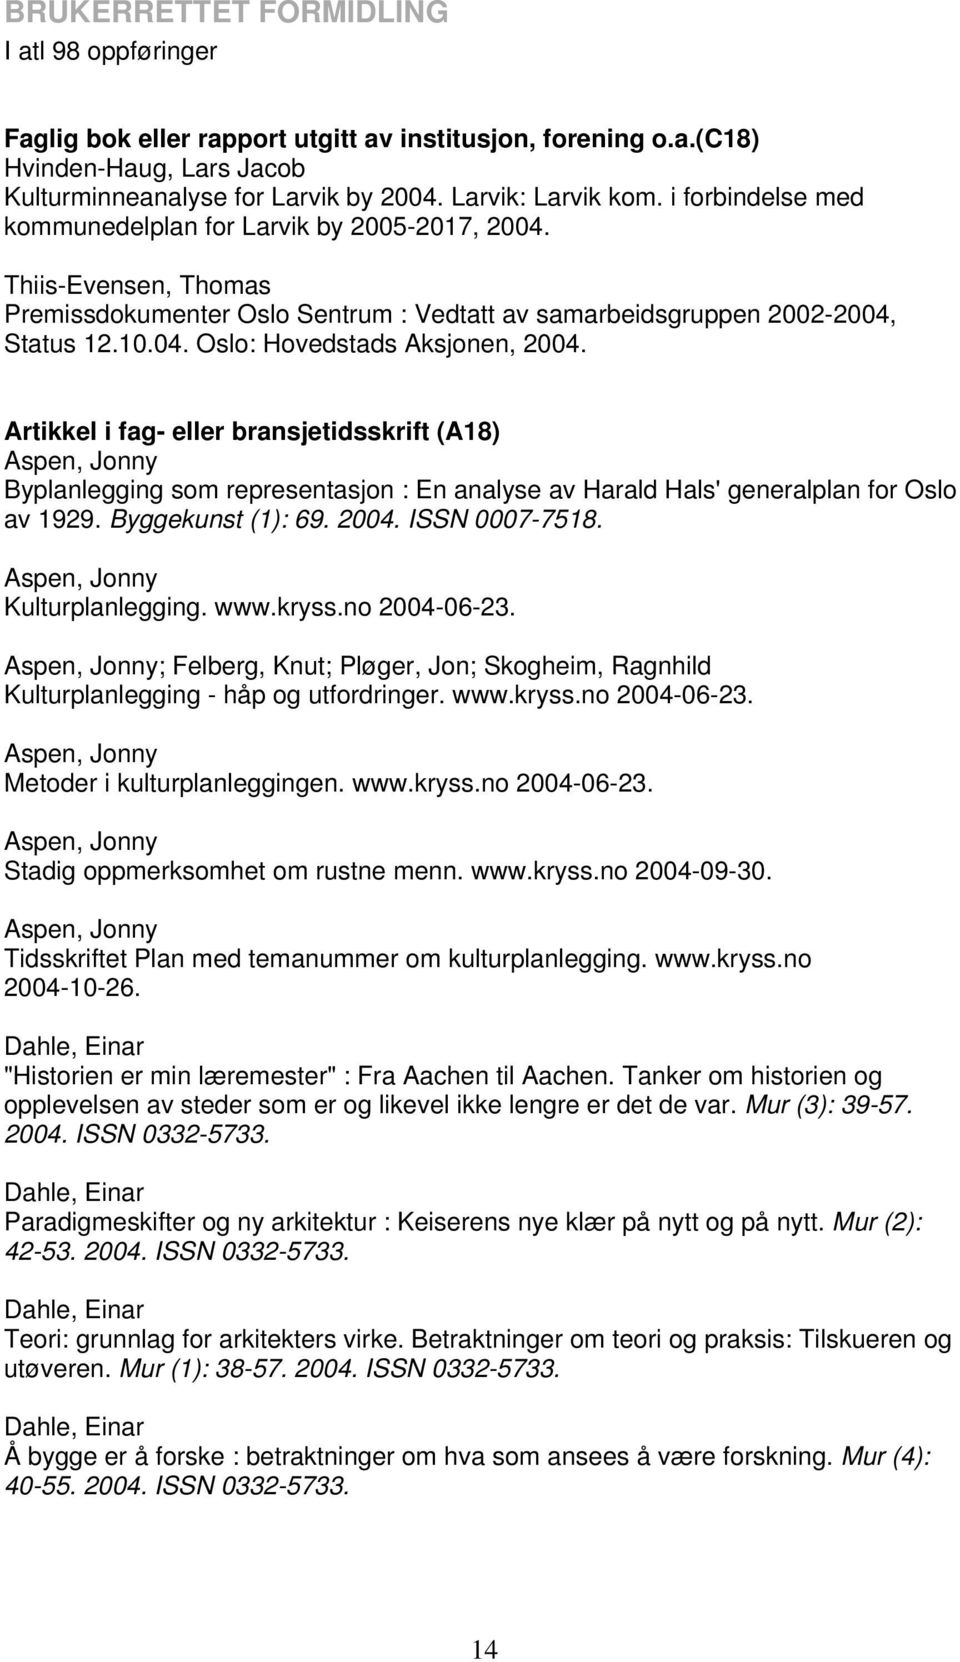 Artikkel i fag- eller bransjetidsskrift (A18) Aspen, Jonny Byplanlegging som representasjon : En analyse av Harald Hals' generalplan for Oslo av 1929. Byggekunst (1): 69. 2004. ISSN 0007-7518.